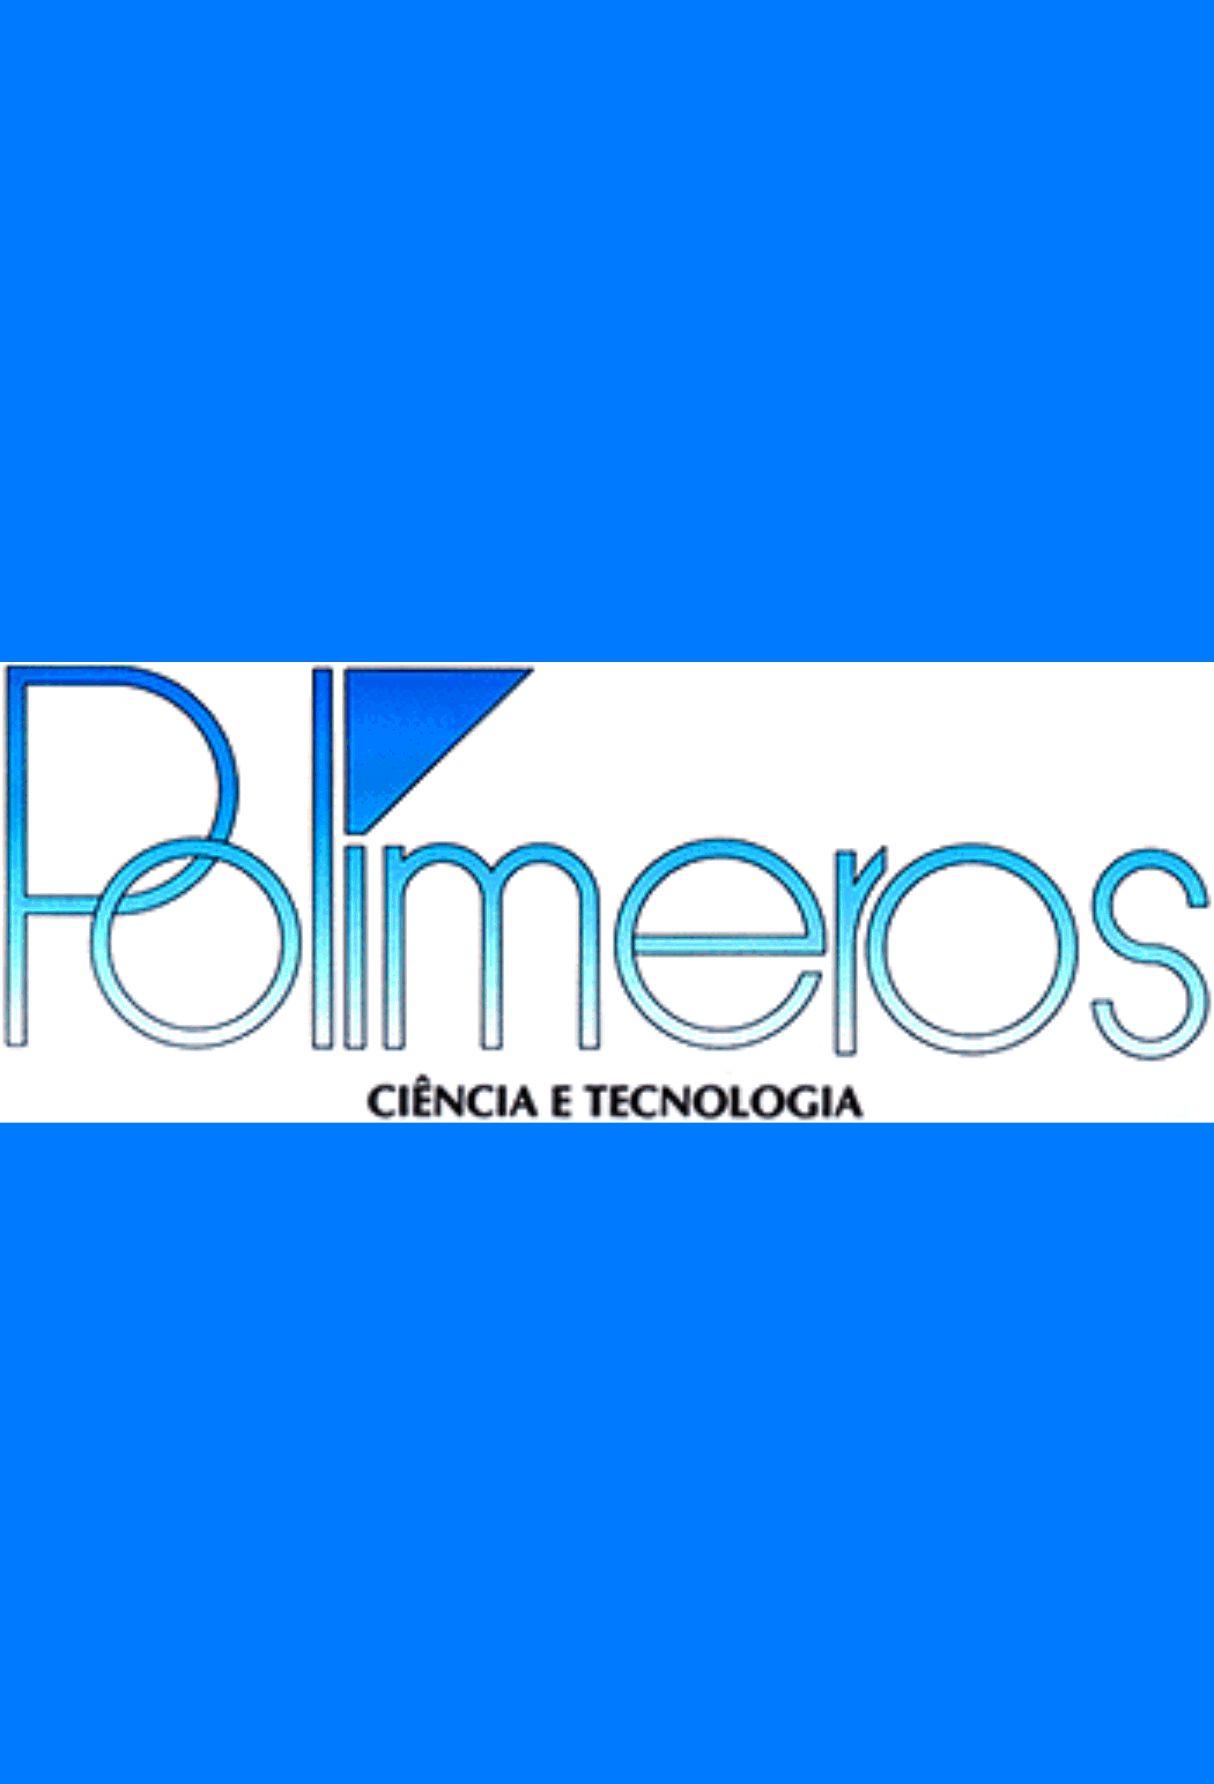 Capa: Polímeros:Ciência e Tecnologia